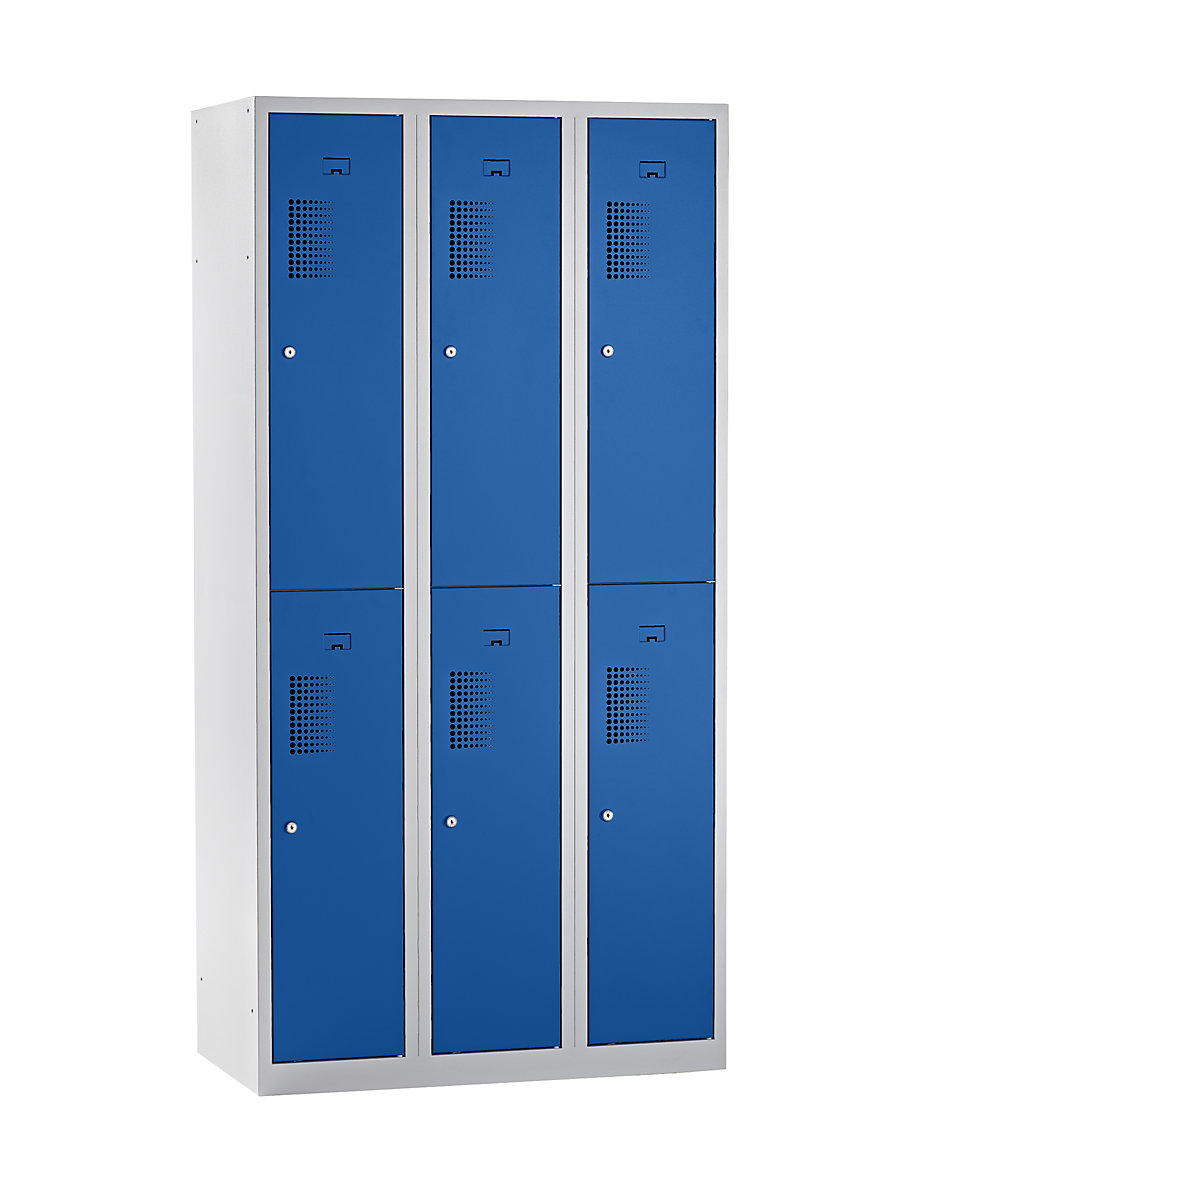 EUROKRAFTbasic Garderobenschrank, halbhohe Fächer, Breite 900 mm, 6 Fächer, lichtgrau / enzianblau